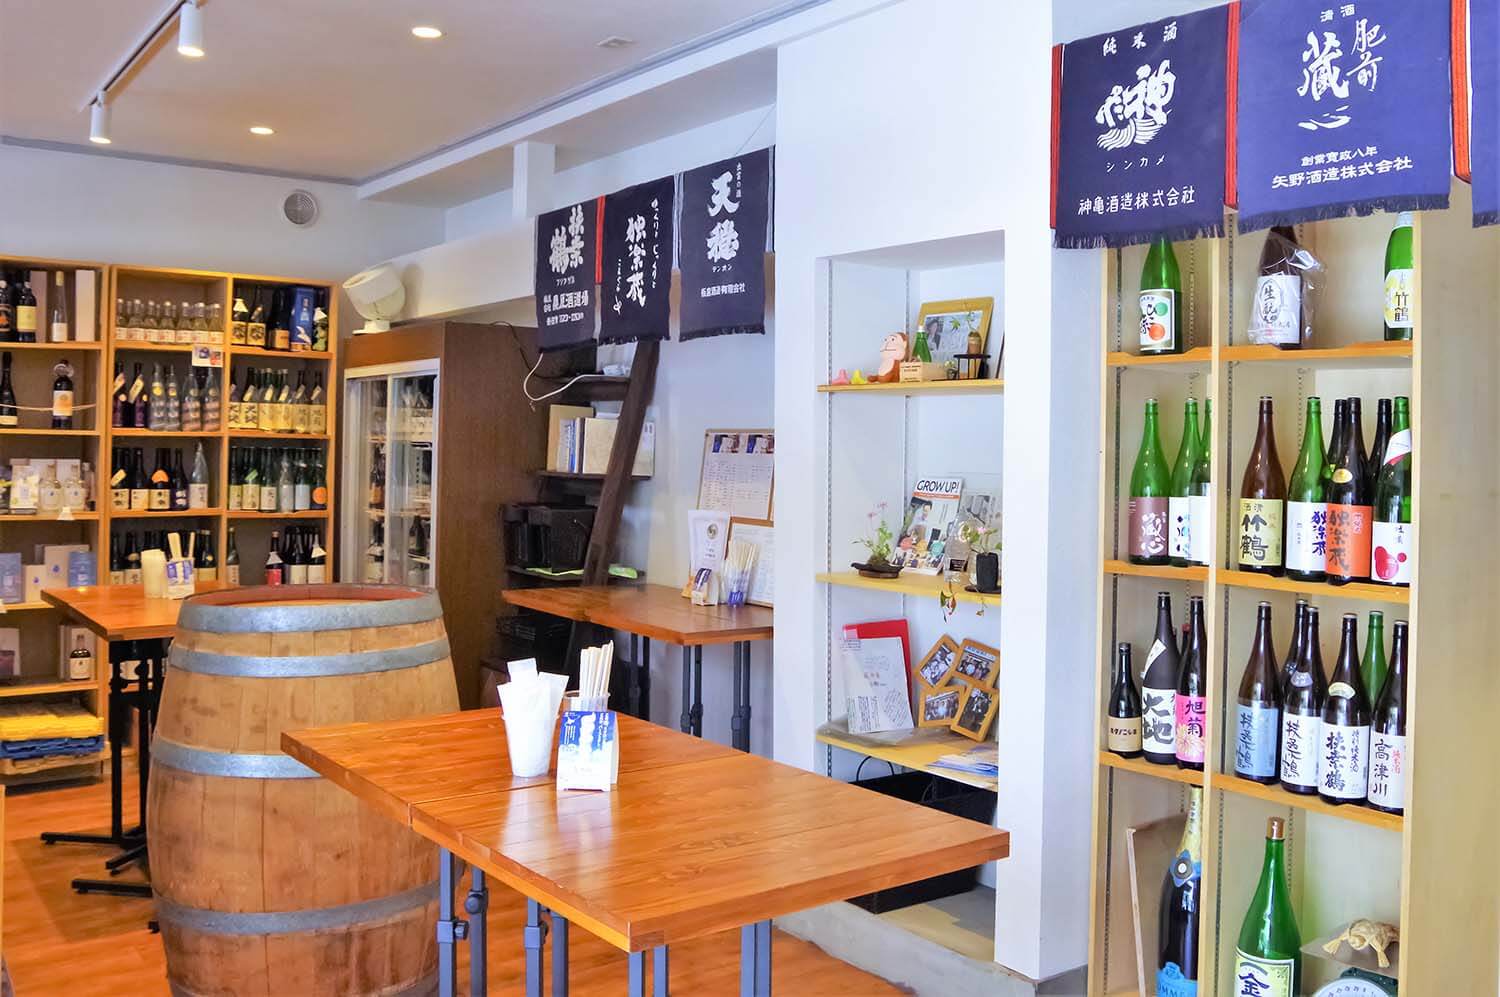 日本酒がずらりと並ぶ店内の中央に角打ちのテーブルが並ぶ。支払いはキャッシュオン制